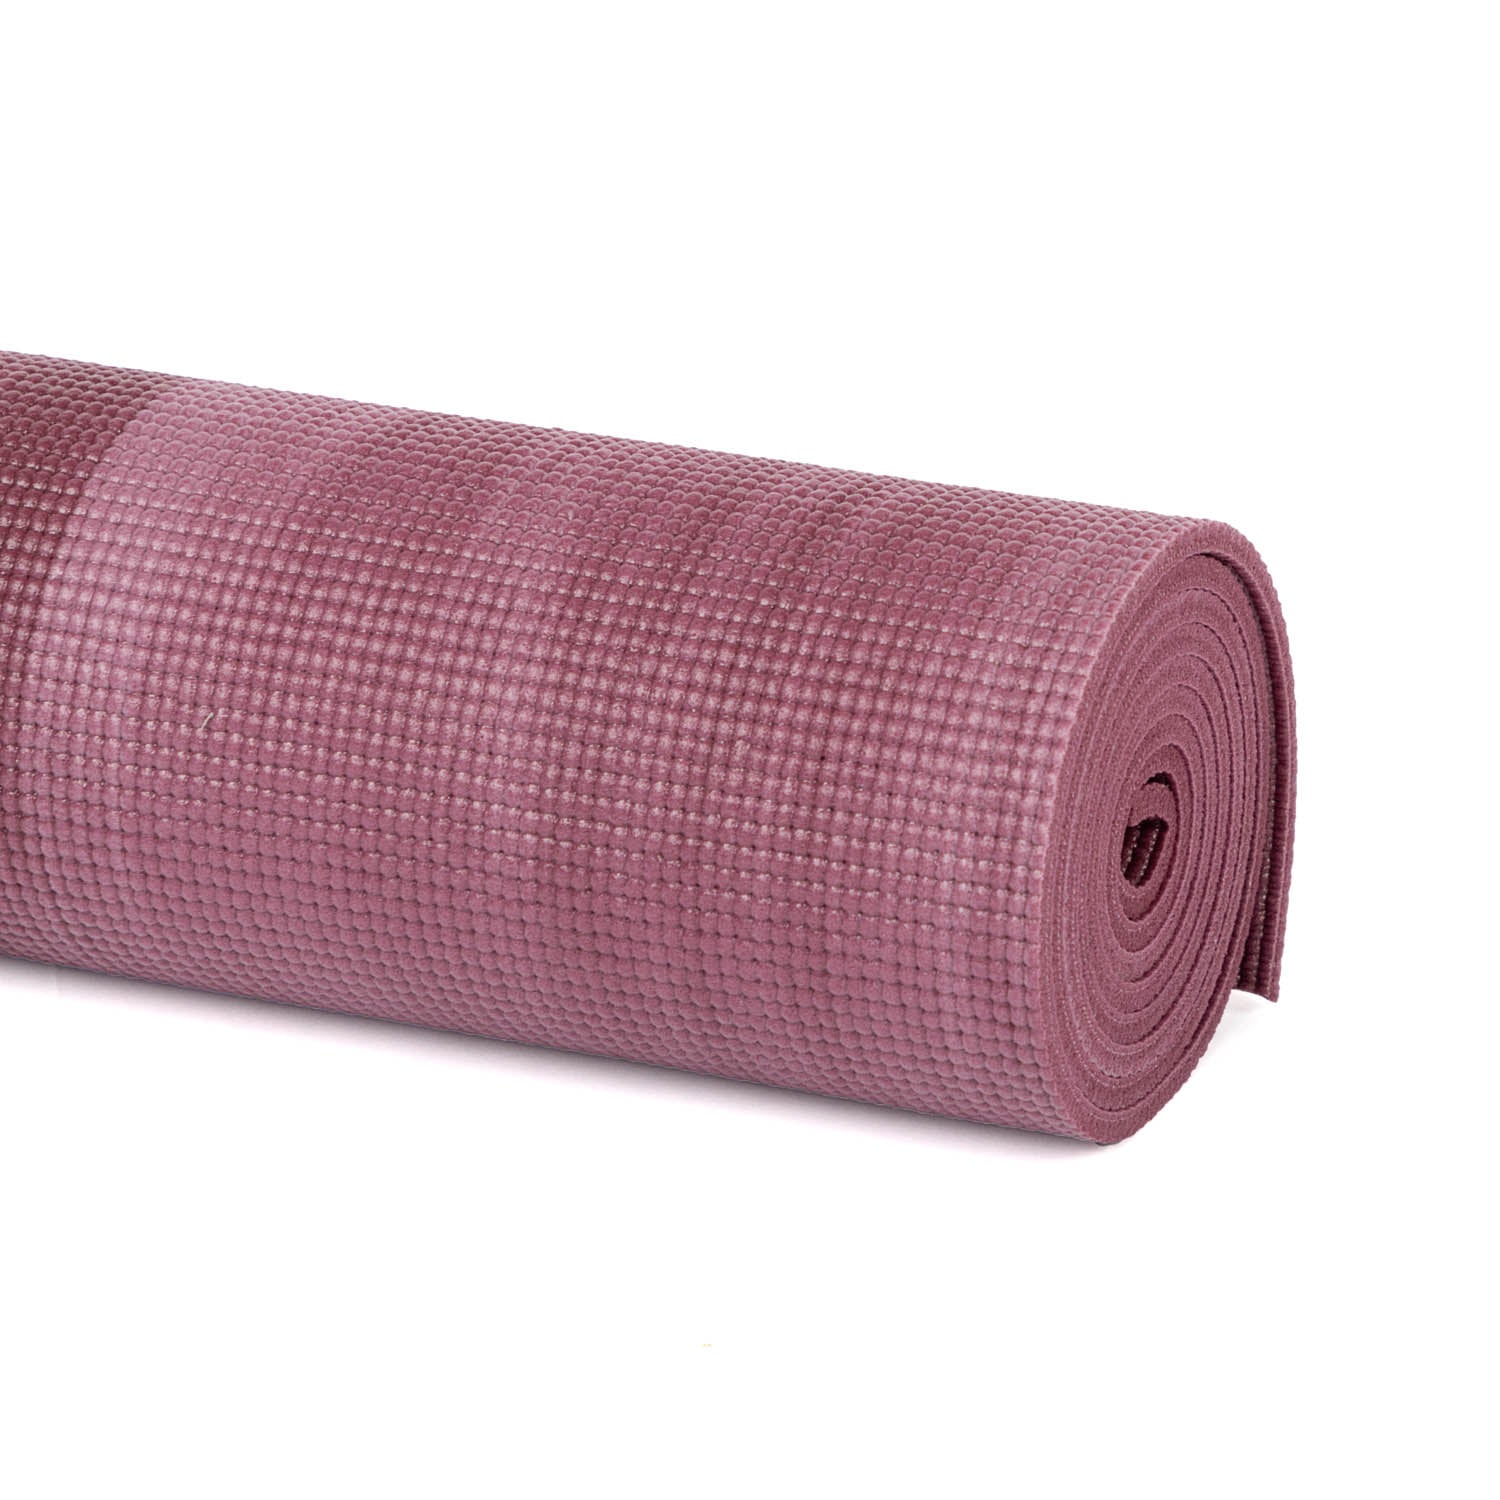 Esterilla para Yoga y Pilates Ganges - 6 mm